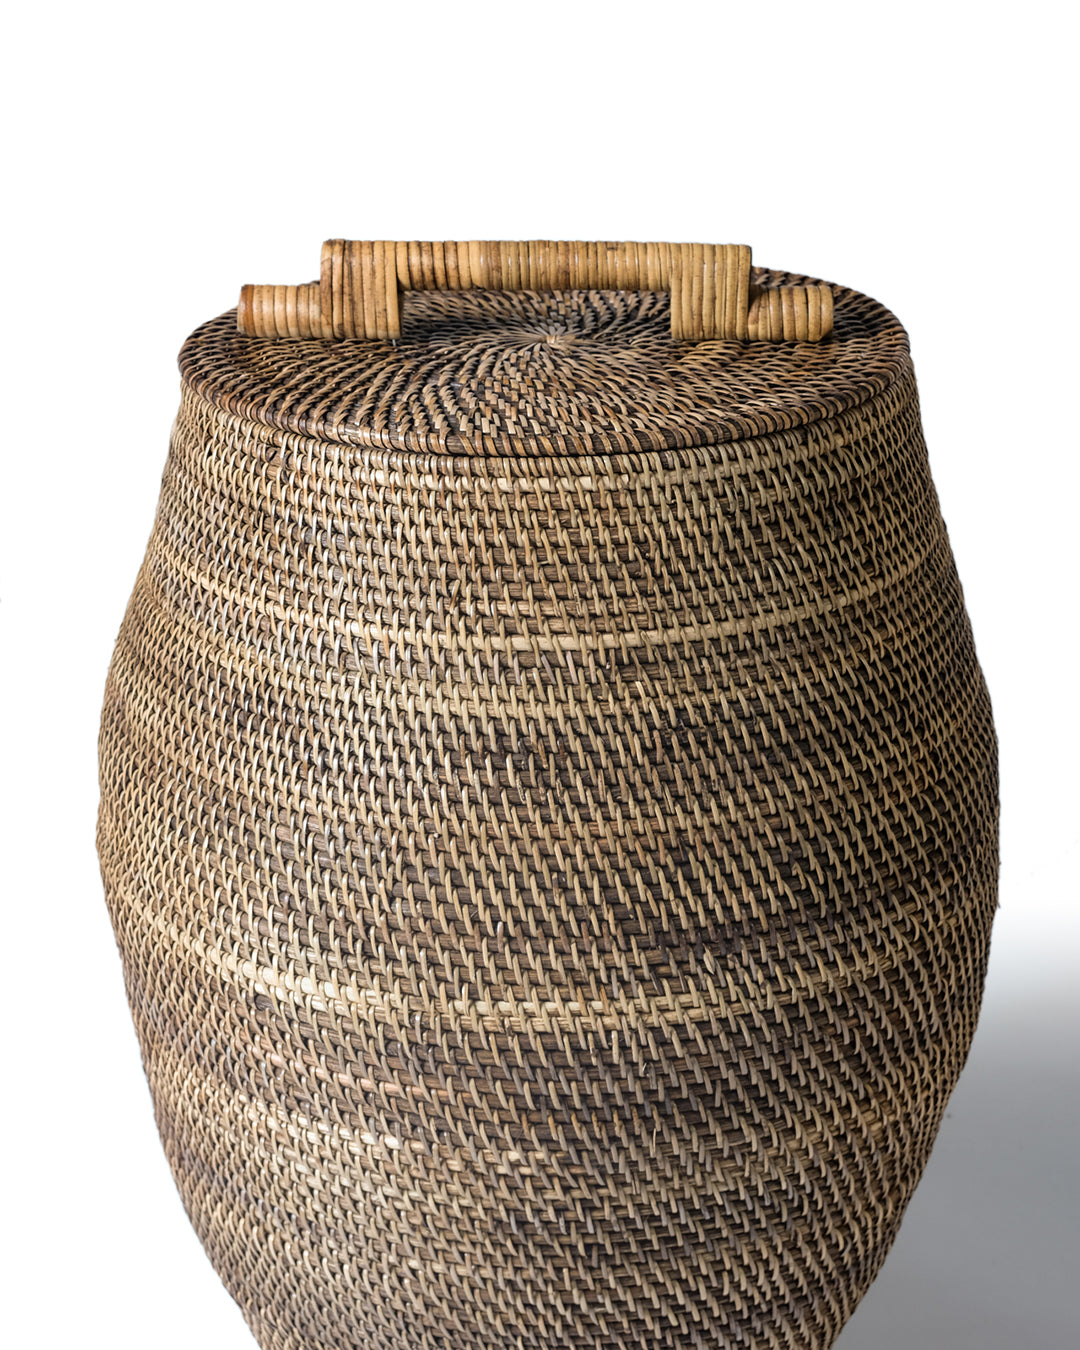 Cesto de ratán 100% natural Grande Sawahlunto decorativo con tapa con y agarre, hecho a mano con acabado natural y forma cilíndrica, 47 cm de diámetro con 66 cm de altura, fabricado en Indonesia